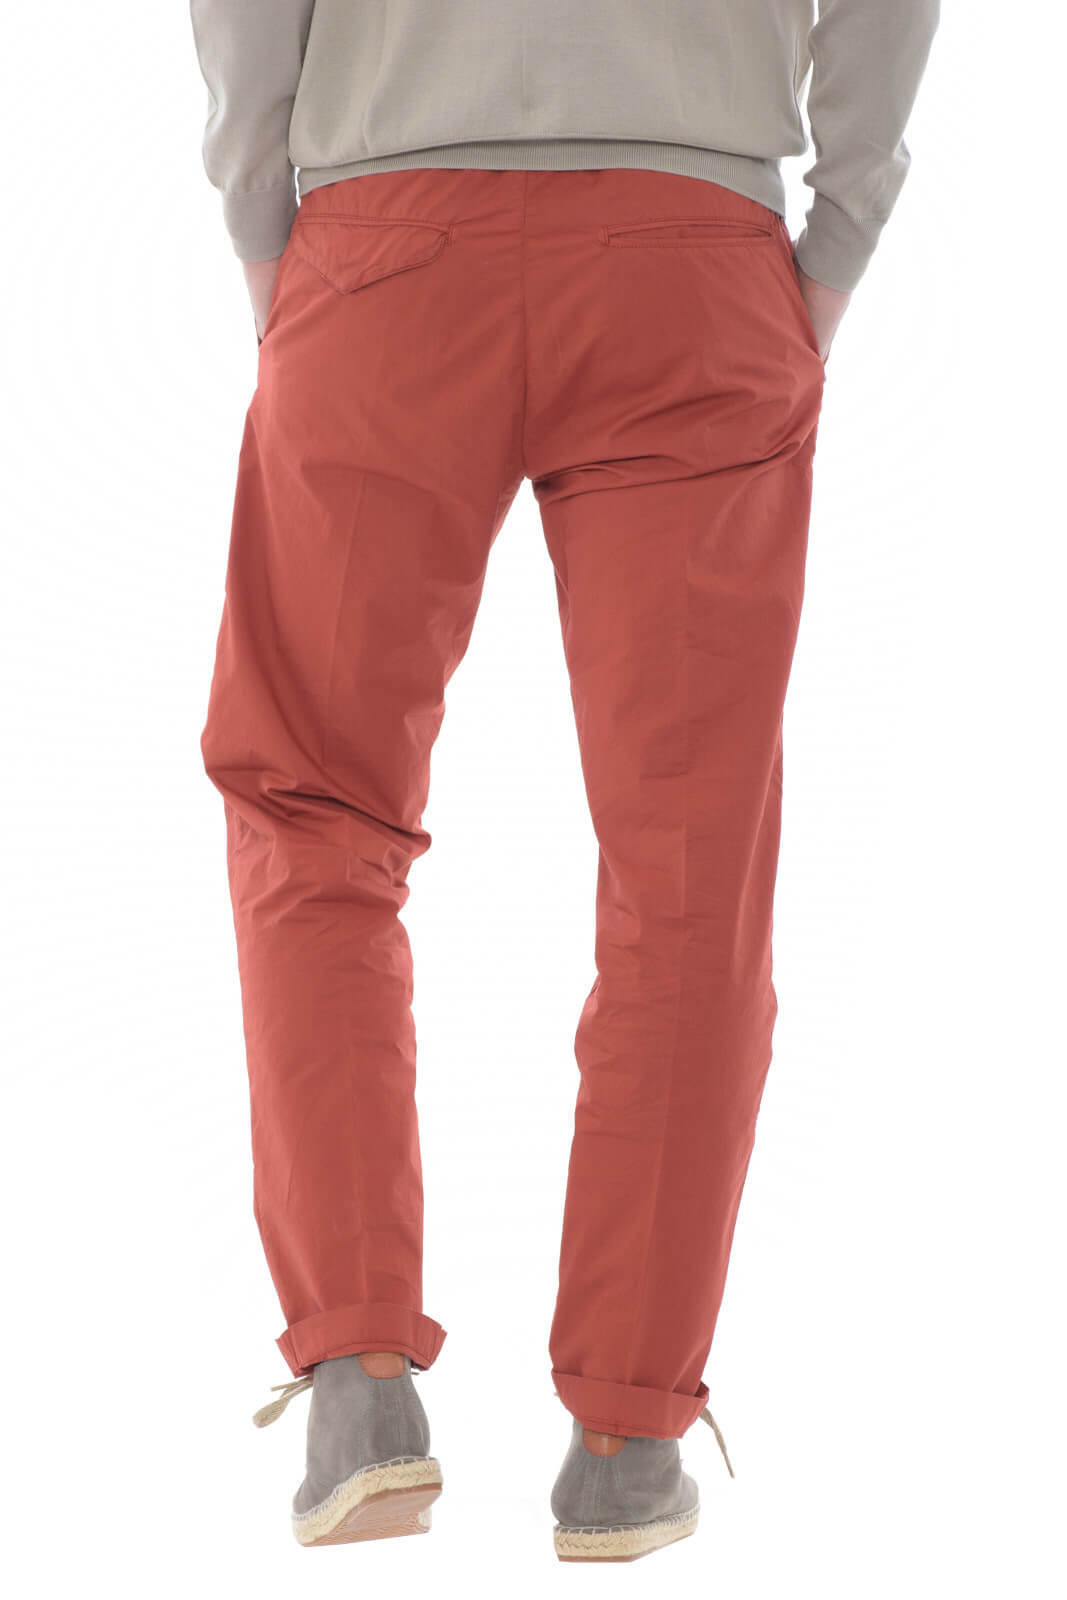 Acquista Pantaloni in pelle da uomo Pantaloni da uomo in pelle rossa  elastica slim fit alla moda colore bianco con rete bar